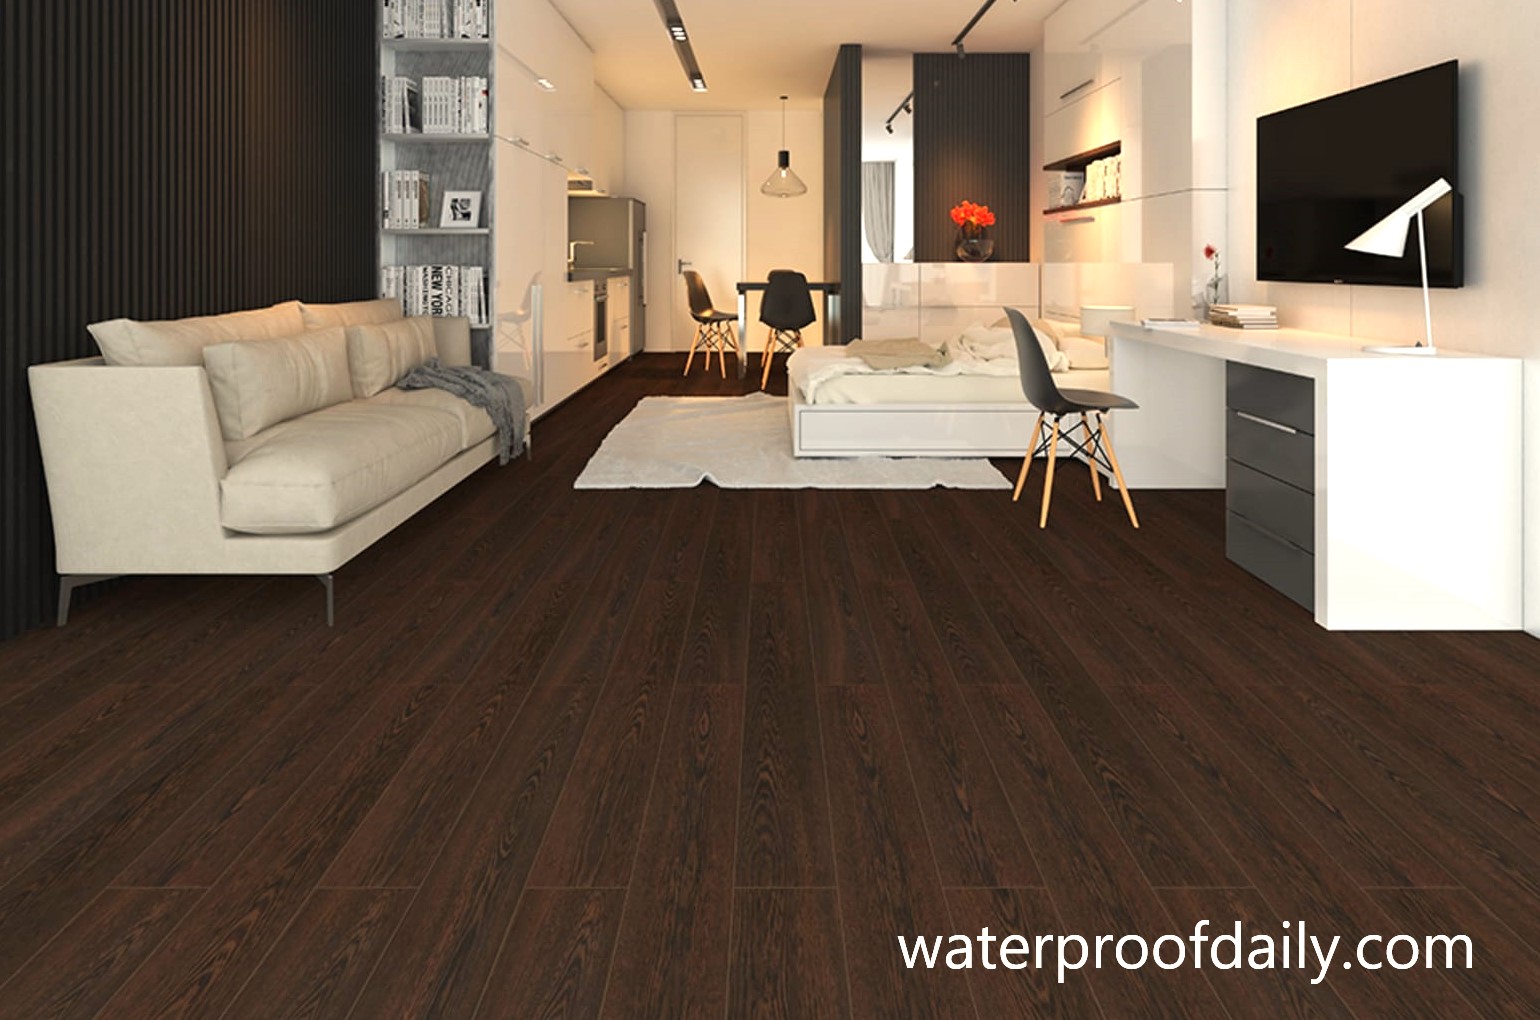 The 12 Best Waterproof Laminate Flooring 2021 (Reviews